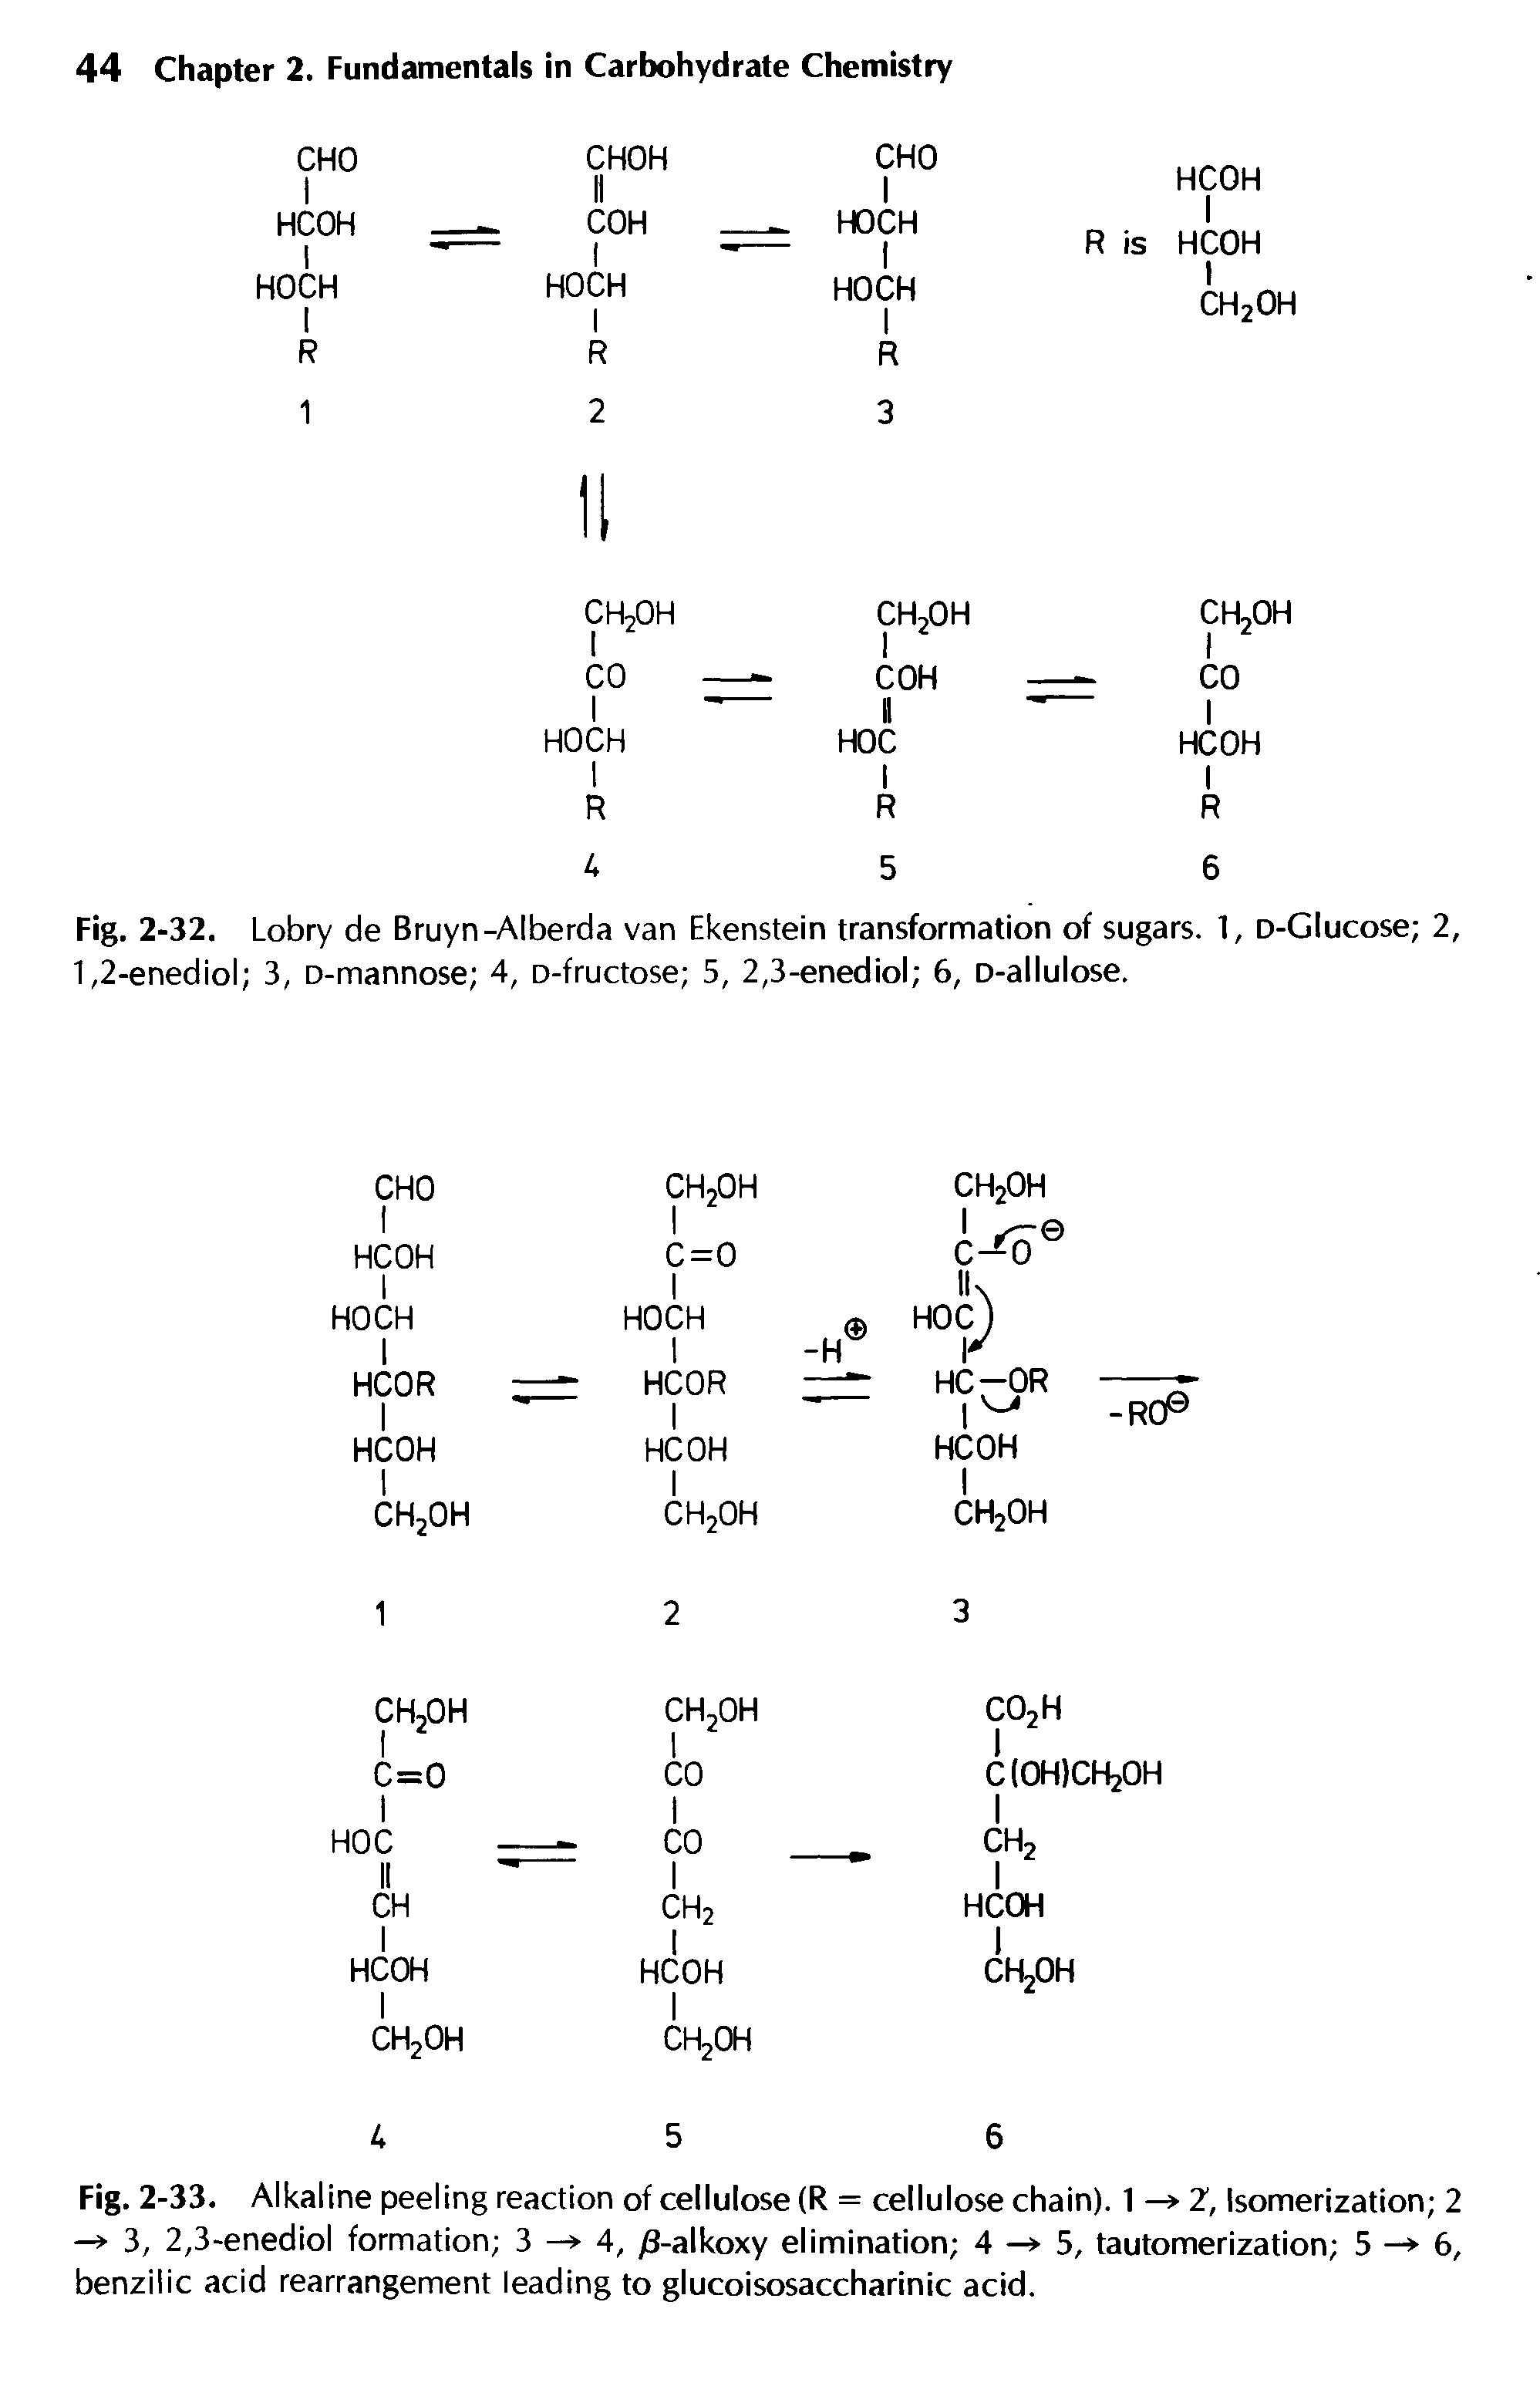 Fig. 2-32. Lobry de Bruyn-Alberda van Ekenstein transformation of sugars. 1, D-Glucose 2, 1,2-enediol 3, D-mannose 4, D-fructose 5, 2,3-enediol 6, D-allulose.